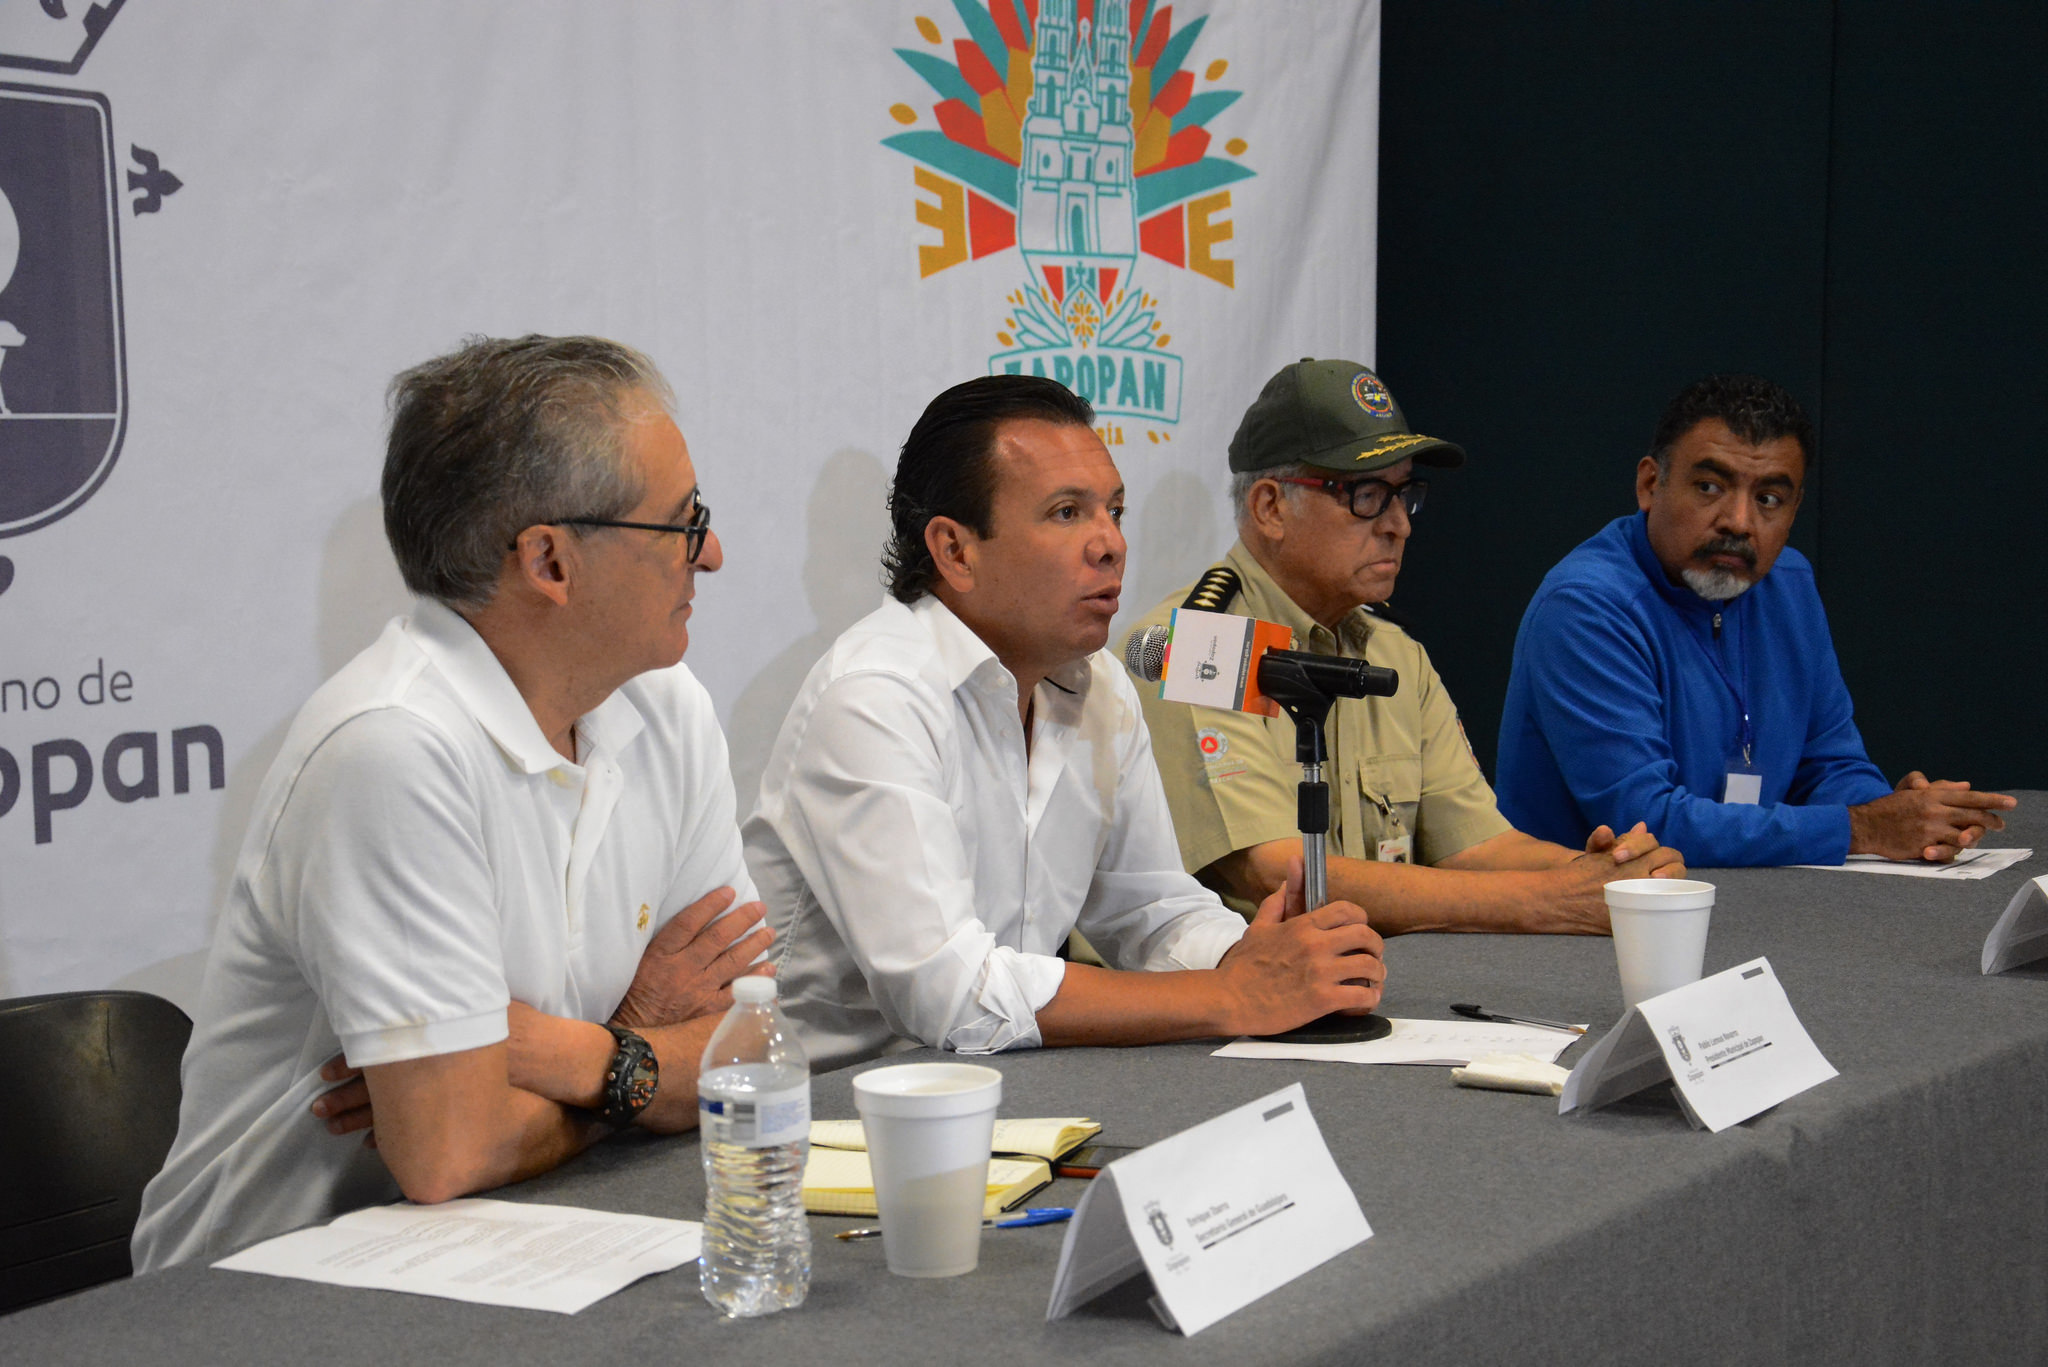 La Romería 2016 presentó una jornada con saldo blanco en los municipios de Zapopan y Guadalajara